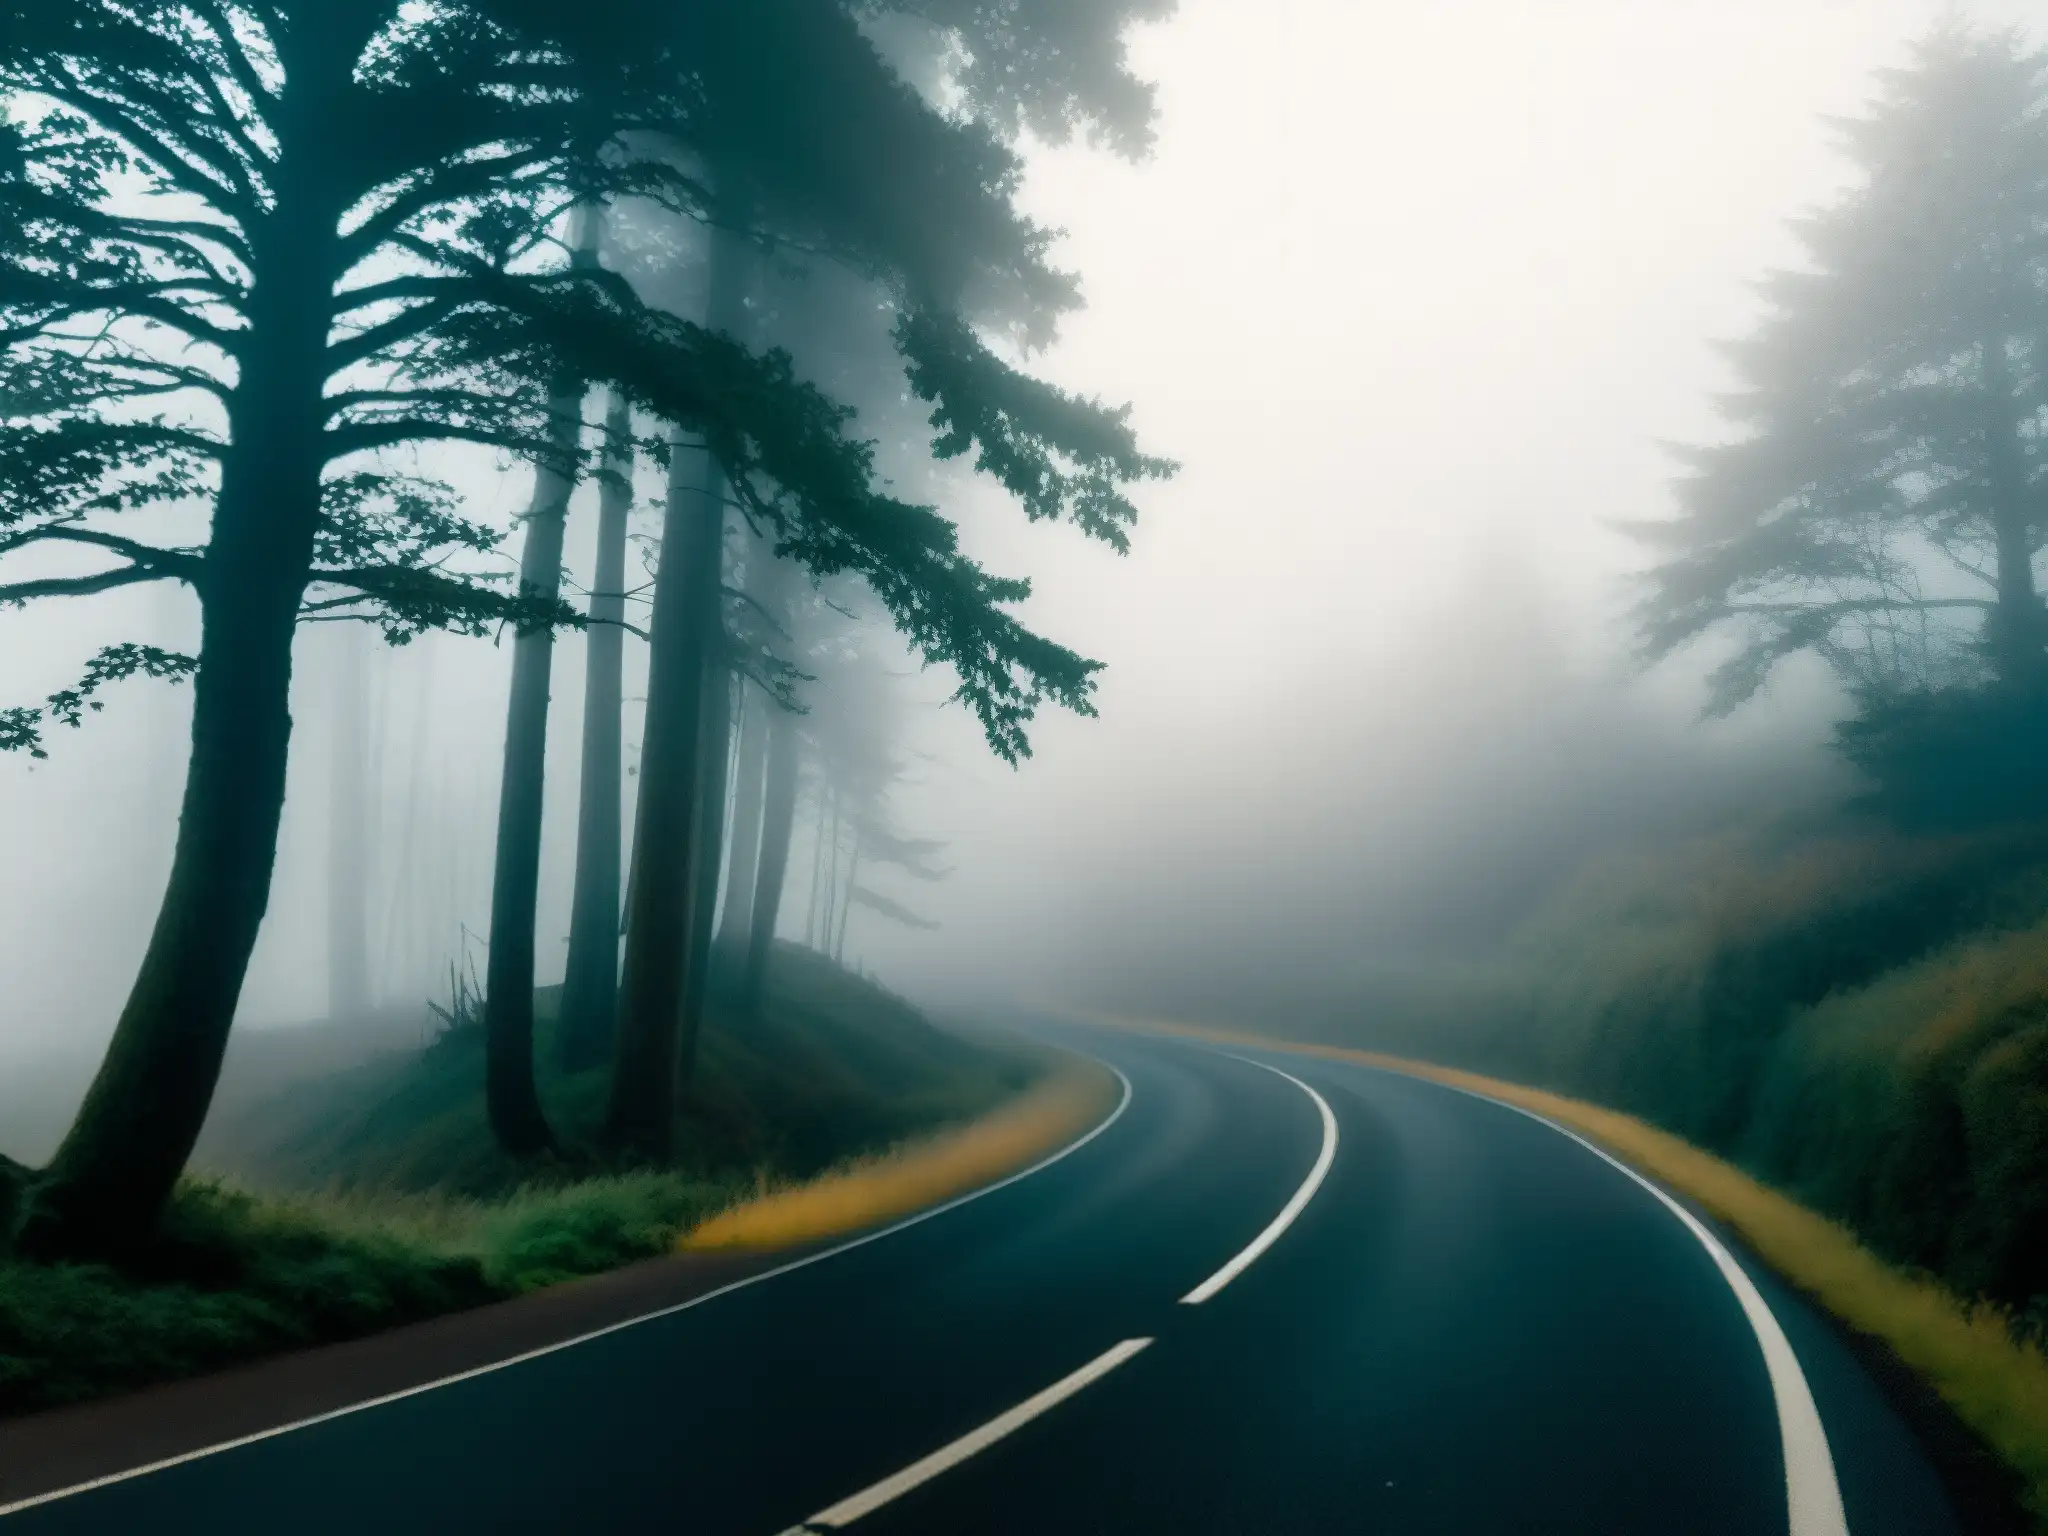 Un camino desolado envuelto en niebla, con árboles cubiertos de maleza proyectando sombras inquietantes